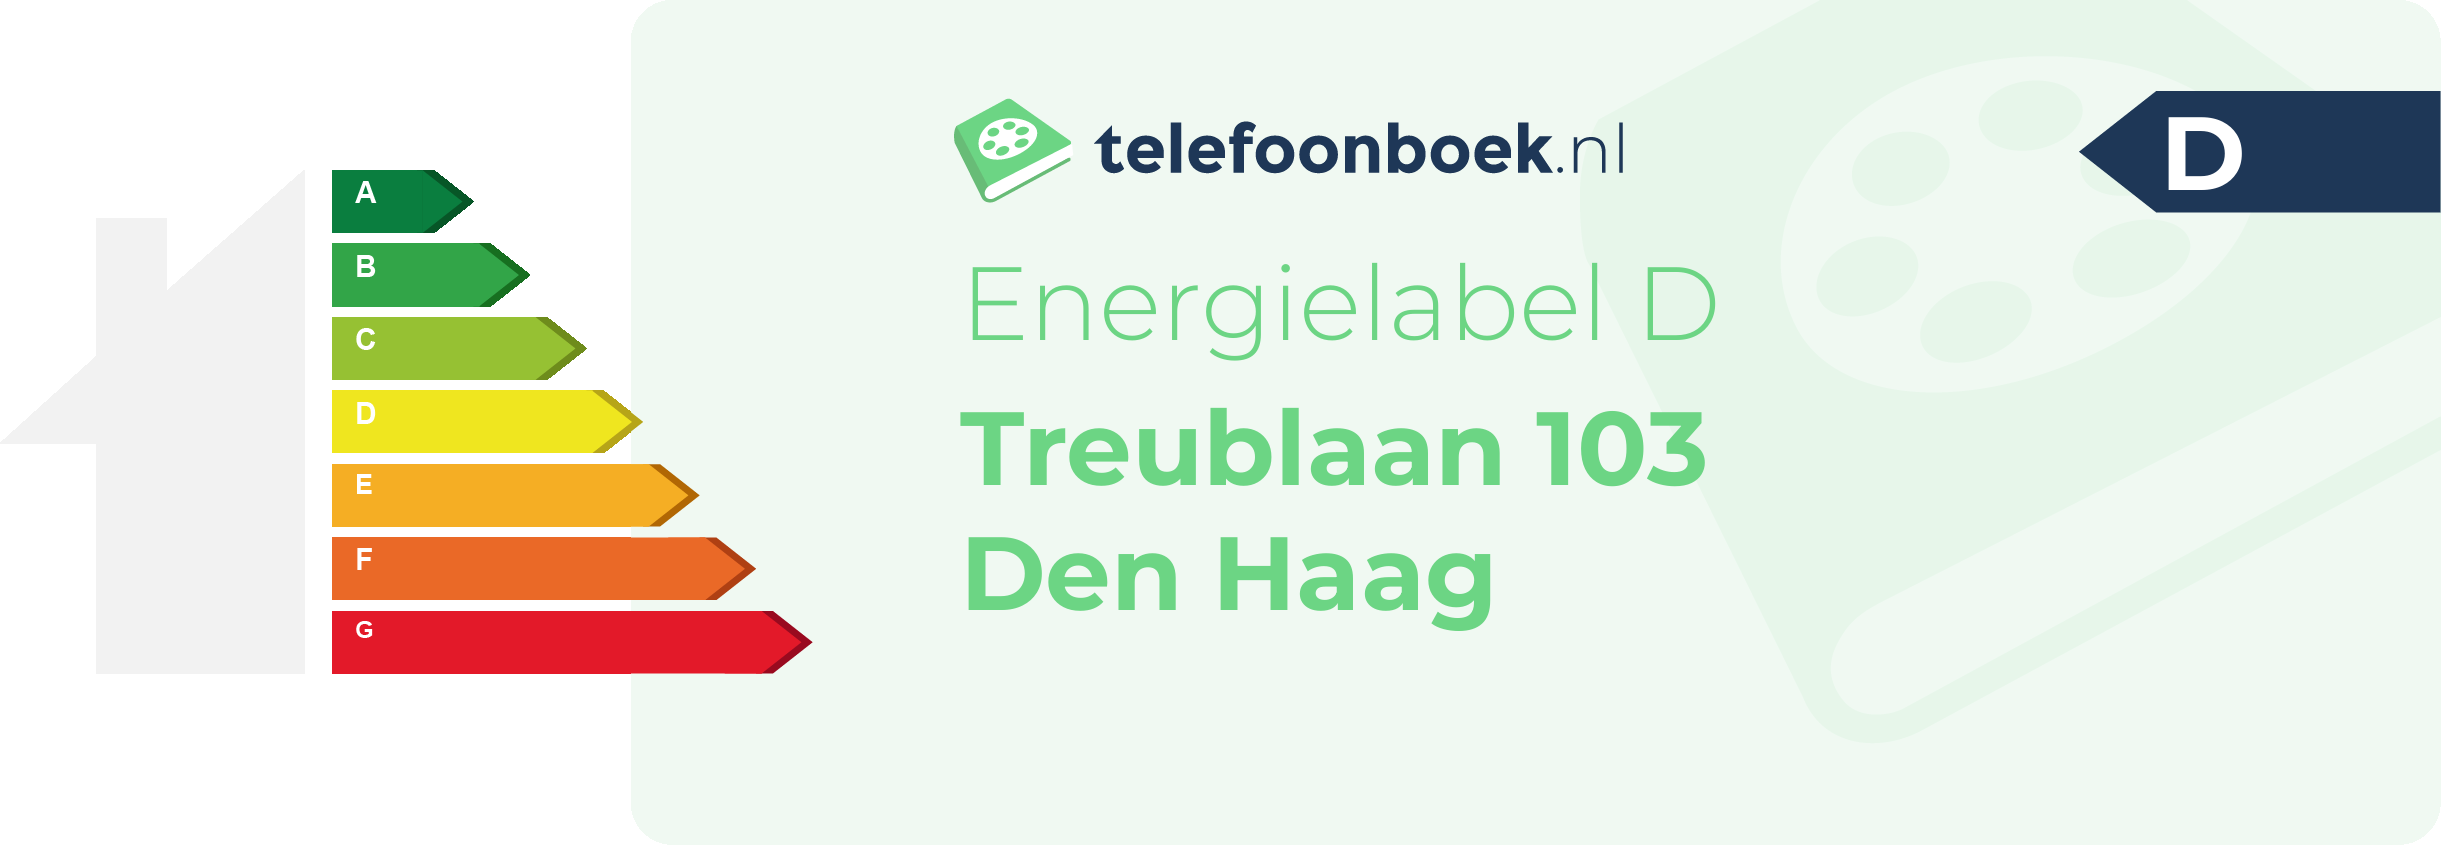 Energielabel Treublaan 103 Den Haag